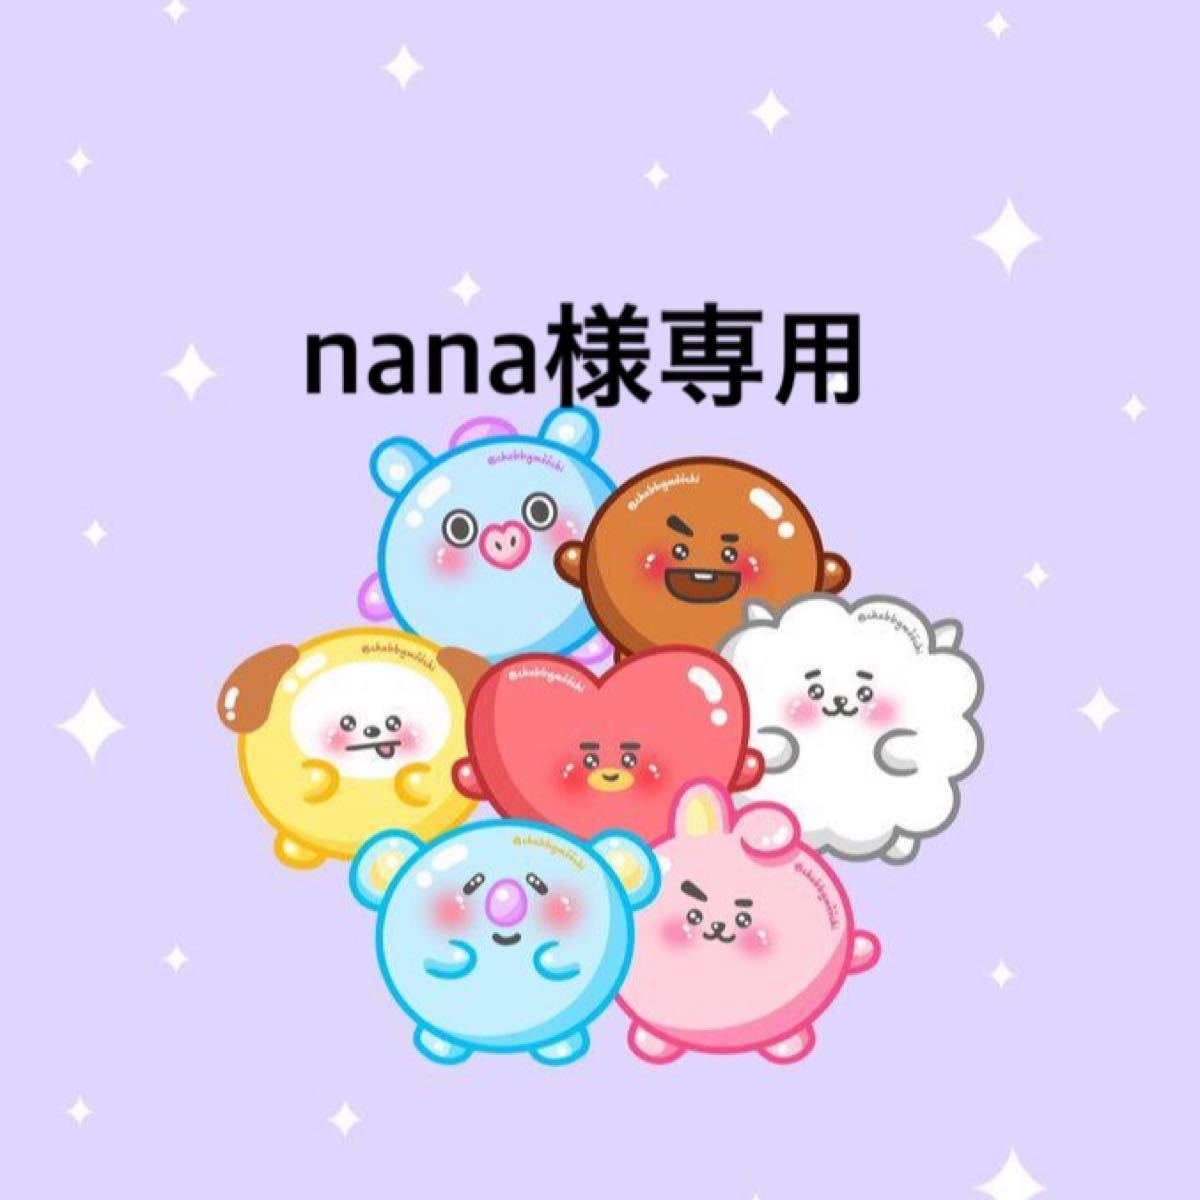 Nana様専用ページです-